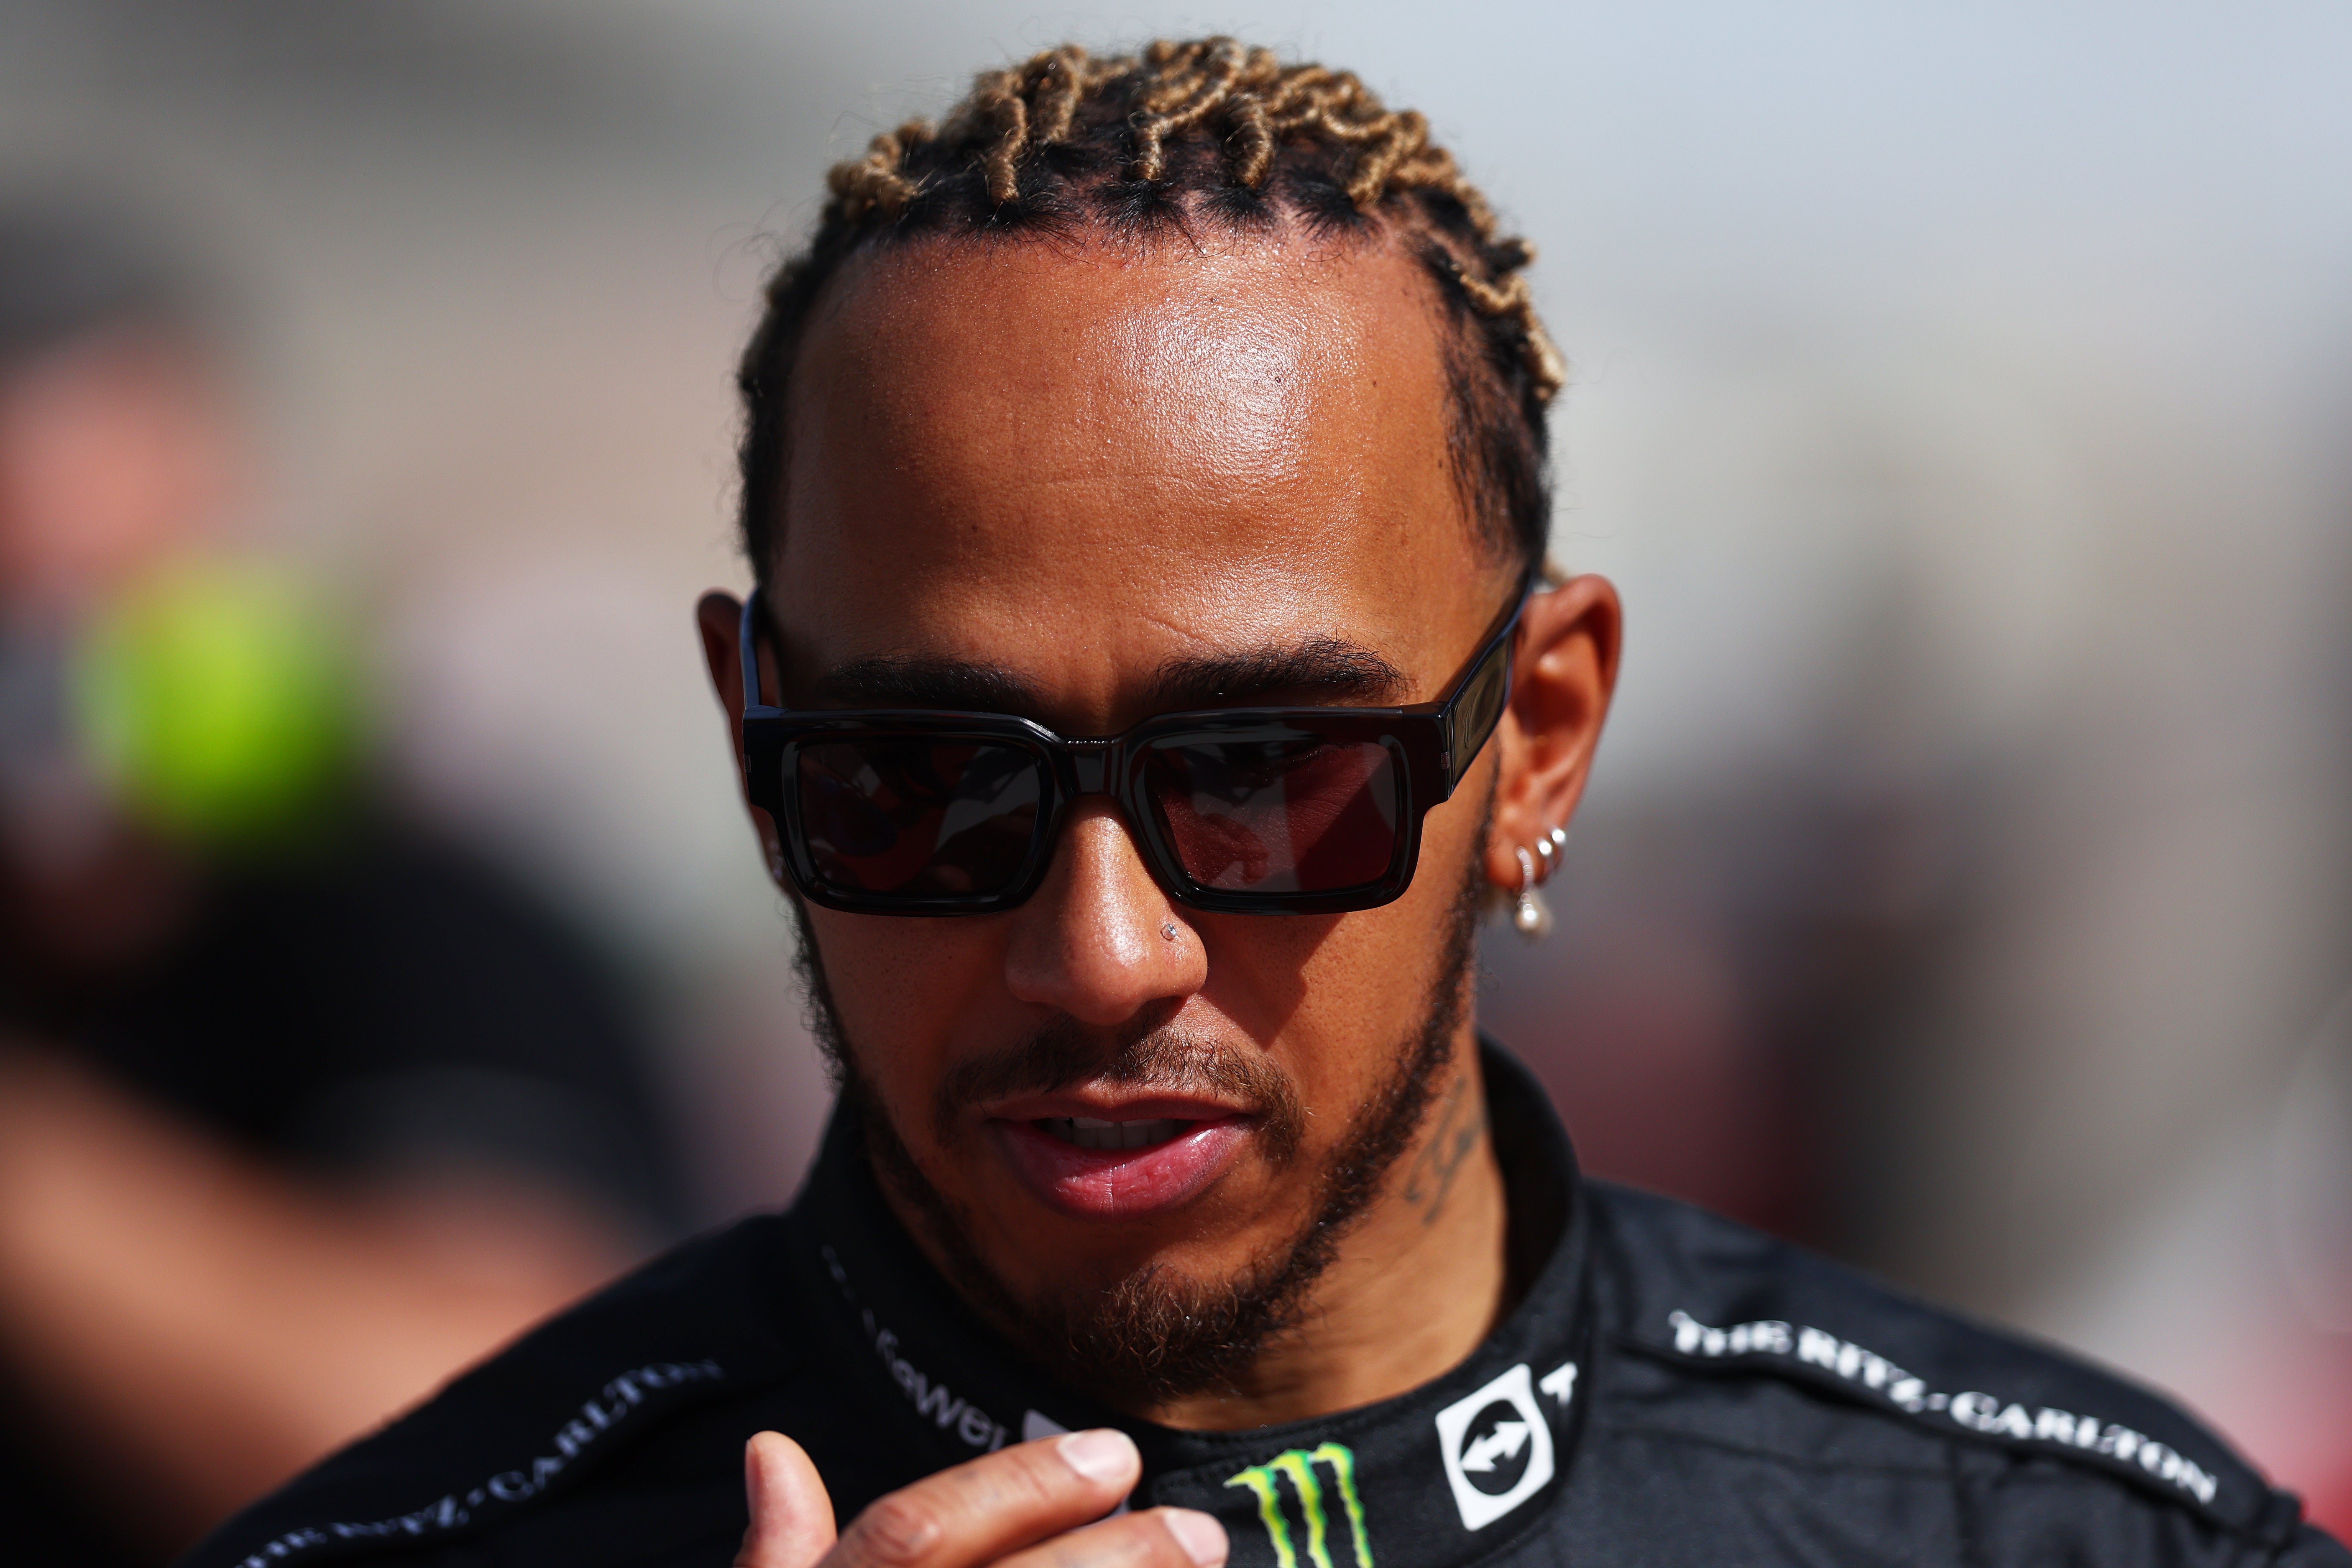 Lewis Hamilton will again seek an eighth world title in 2022